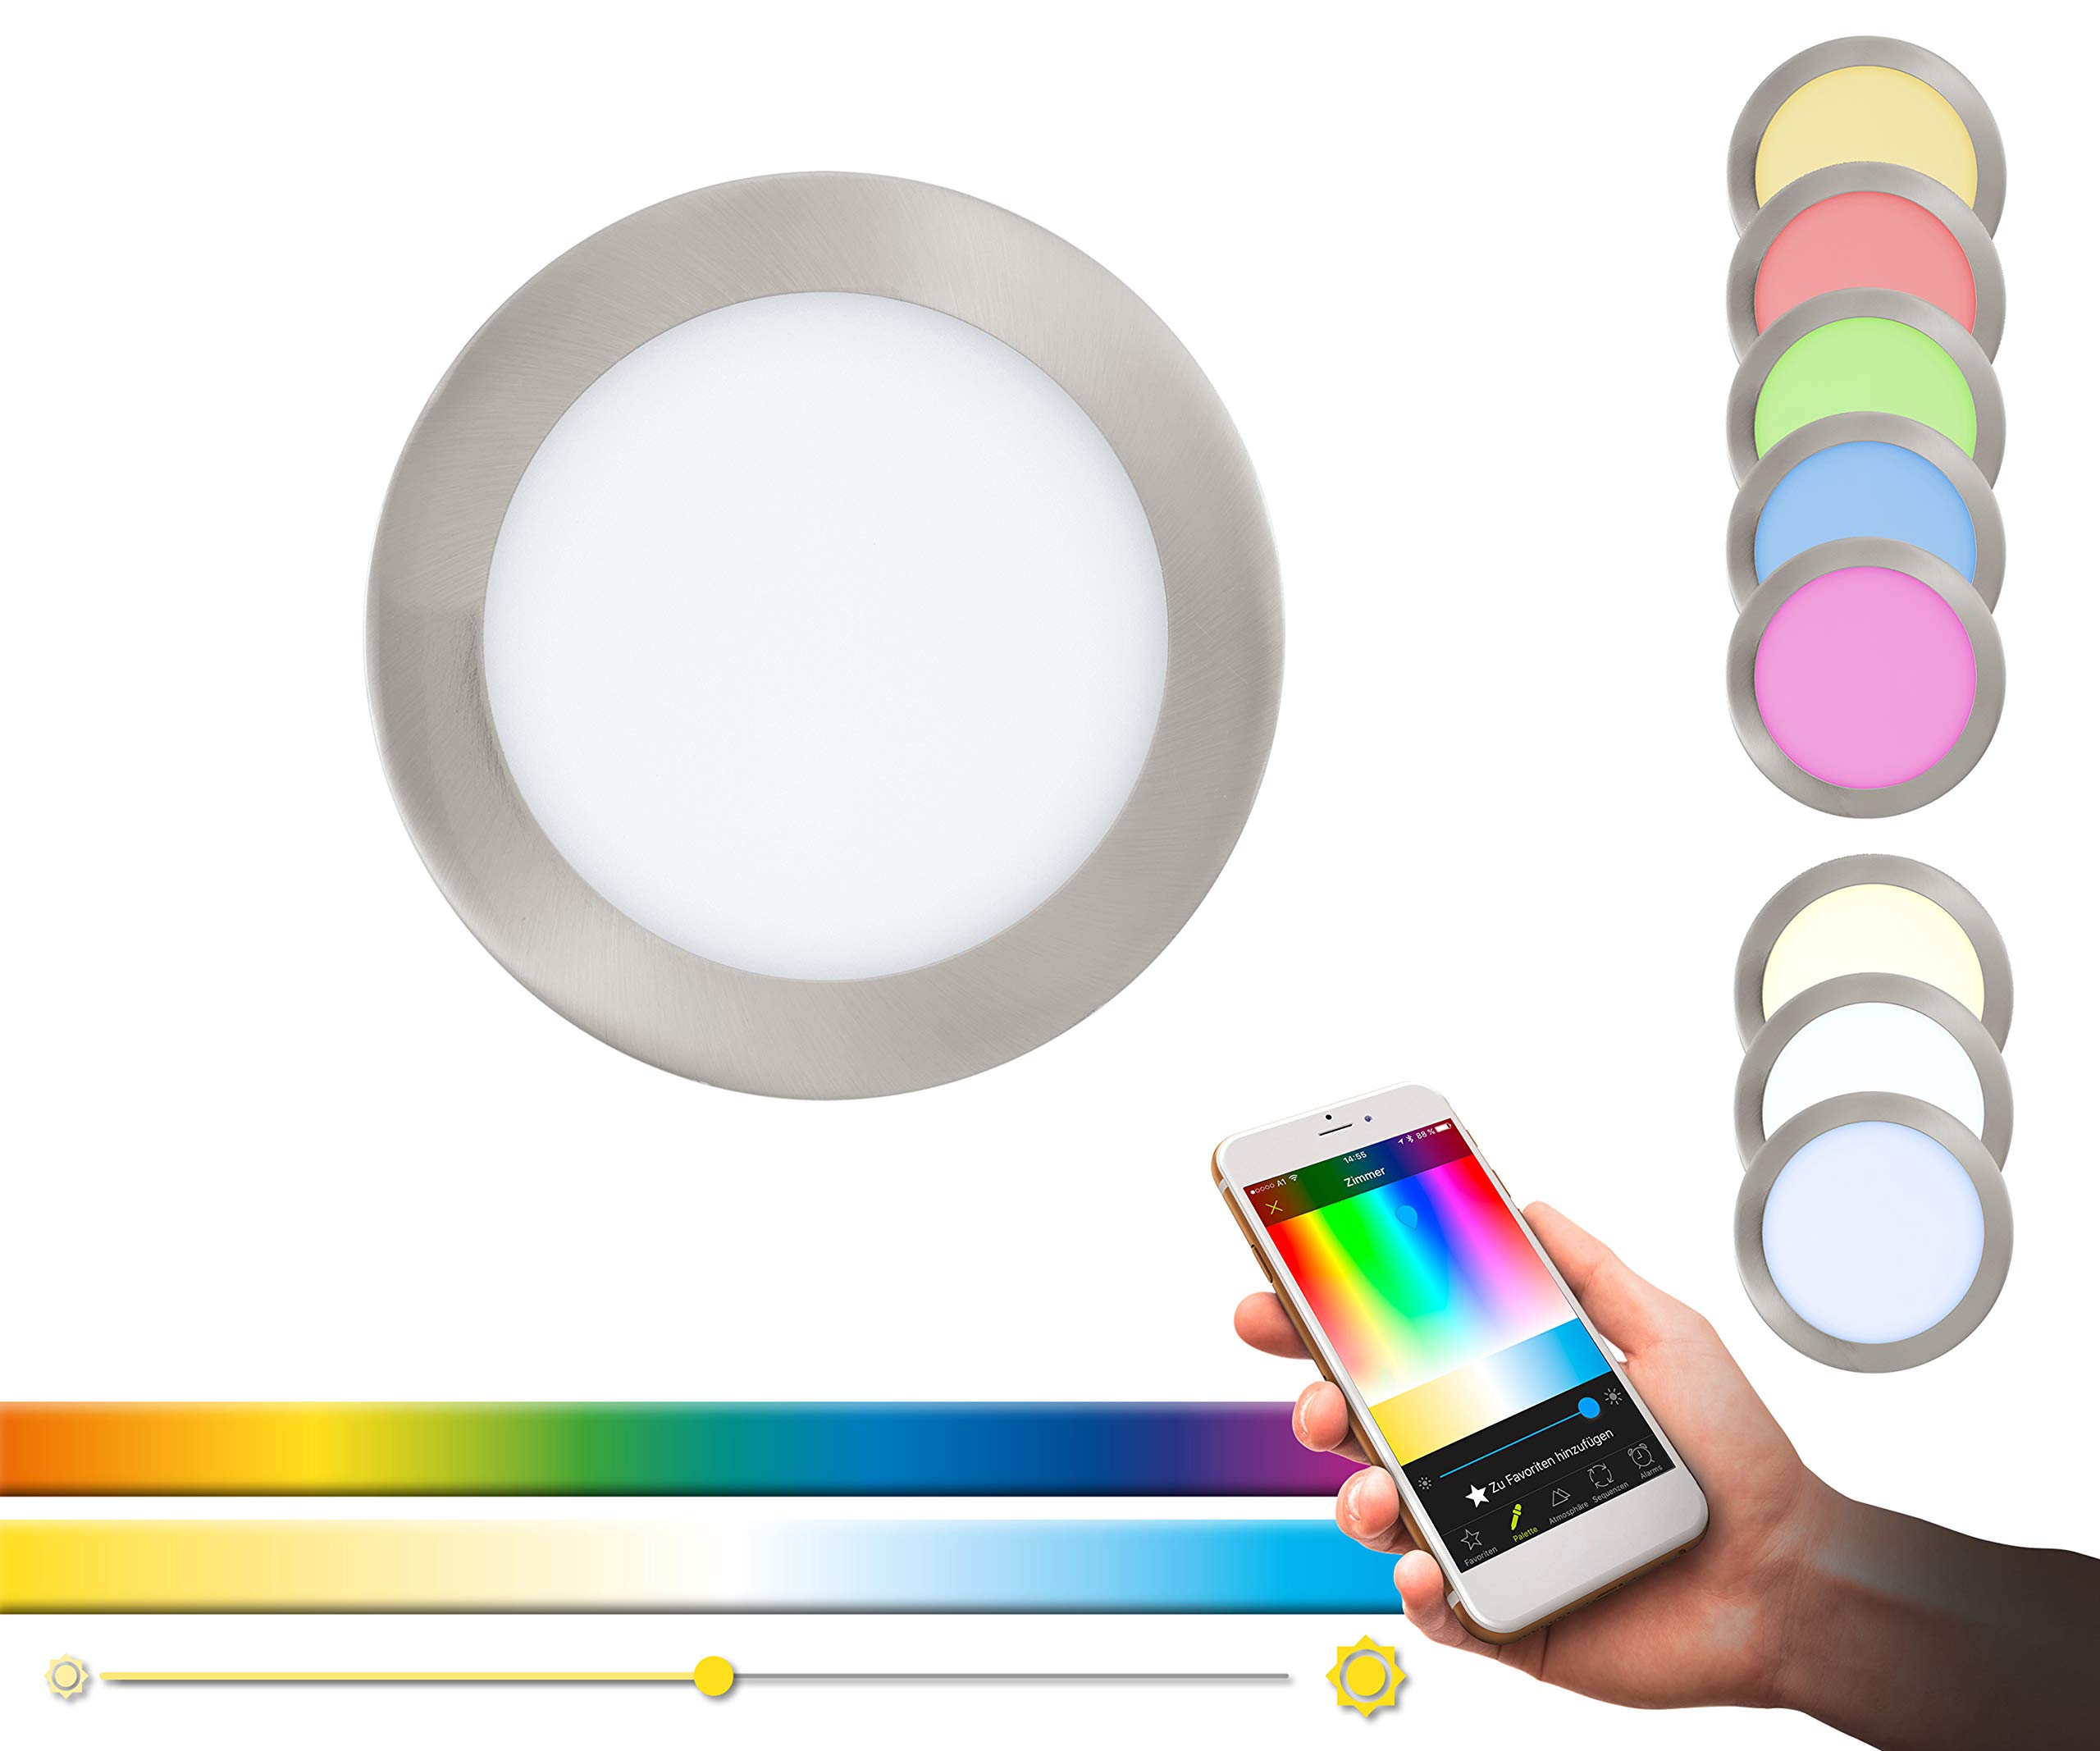 EGLO connect LED Einbauleuchte Fueva-C, Smart Home Einbaulampe, Metall in Silber und Kunststoff in Weiß, Ø 17 cm, dimmbar, Weißtöne und Farben einstellbar